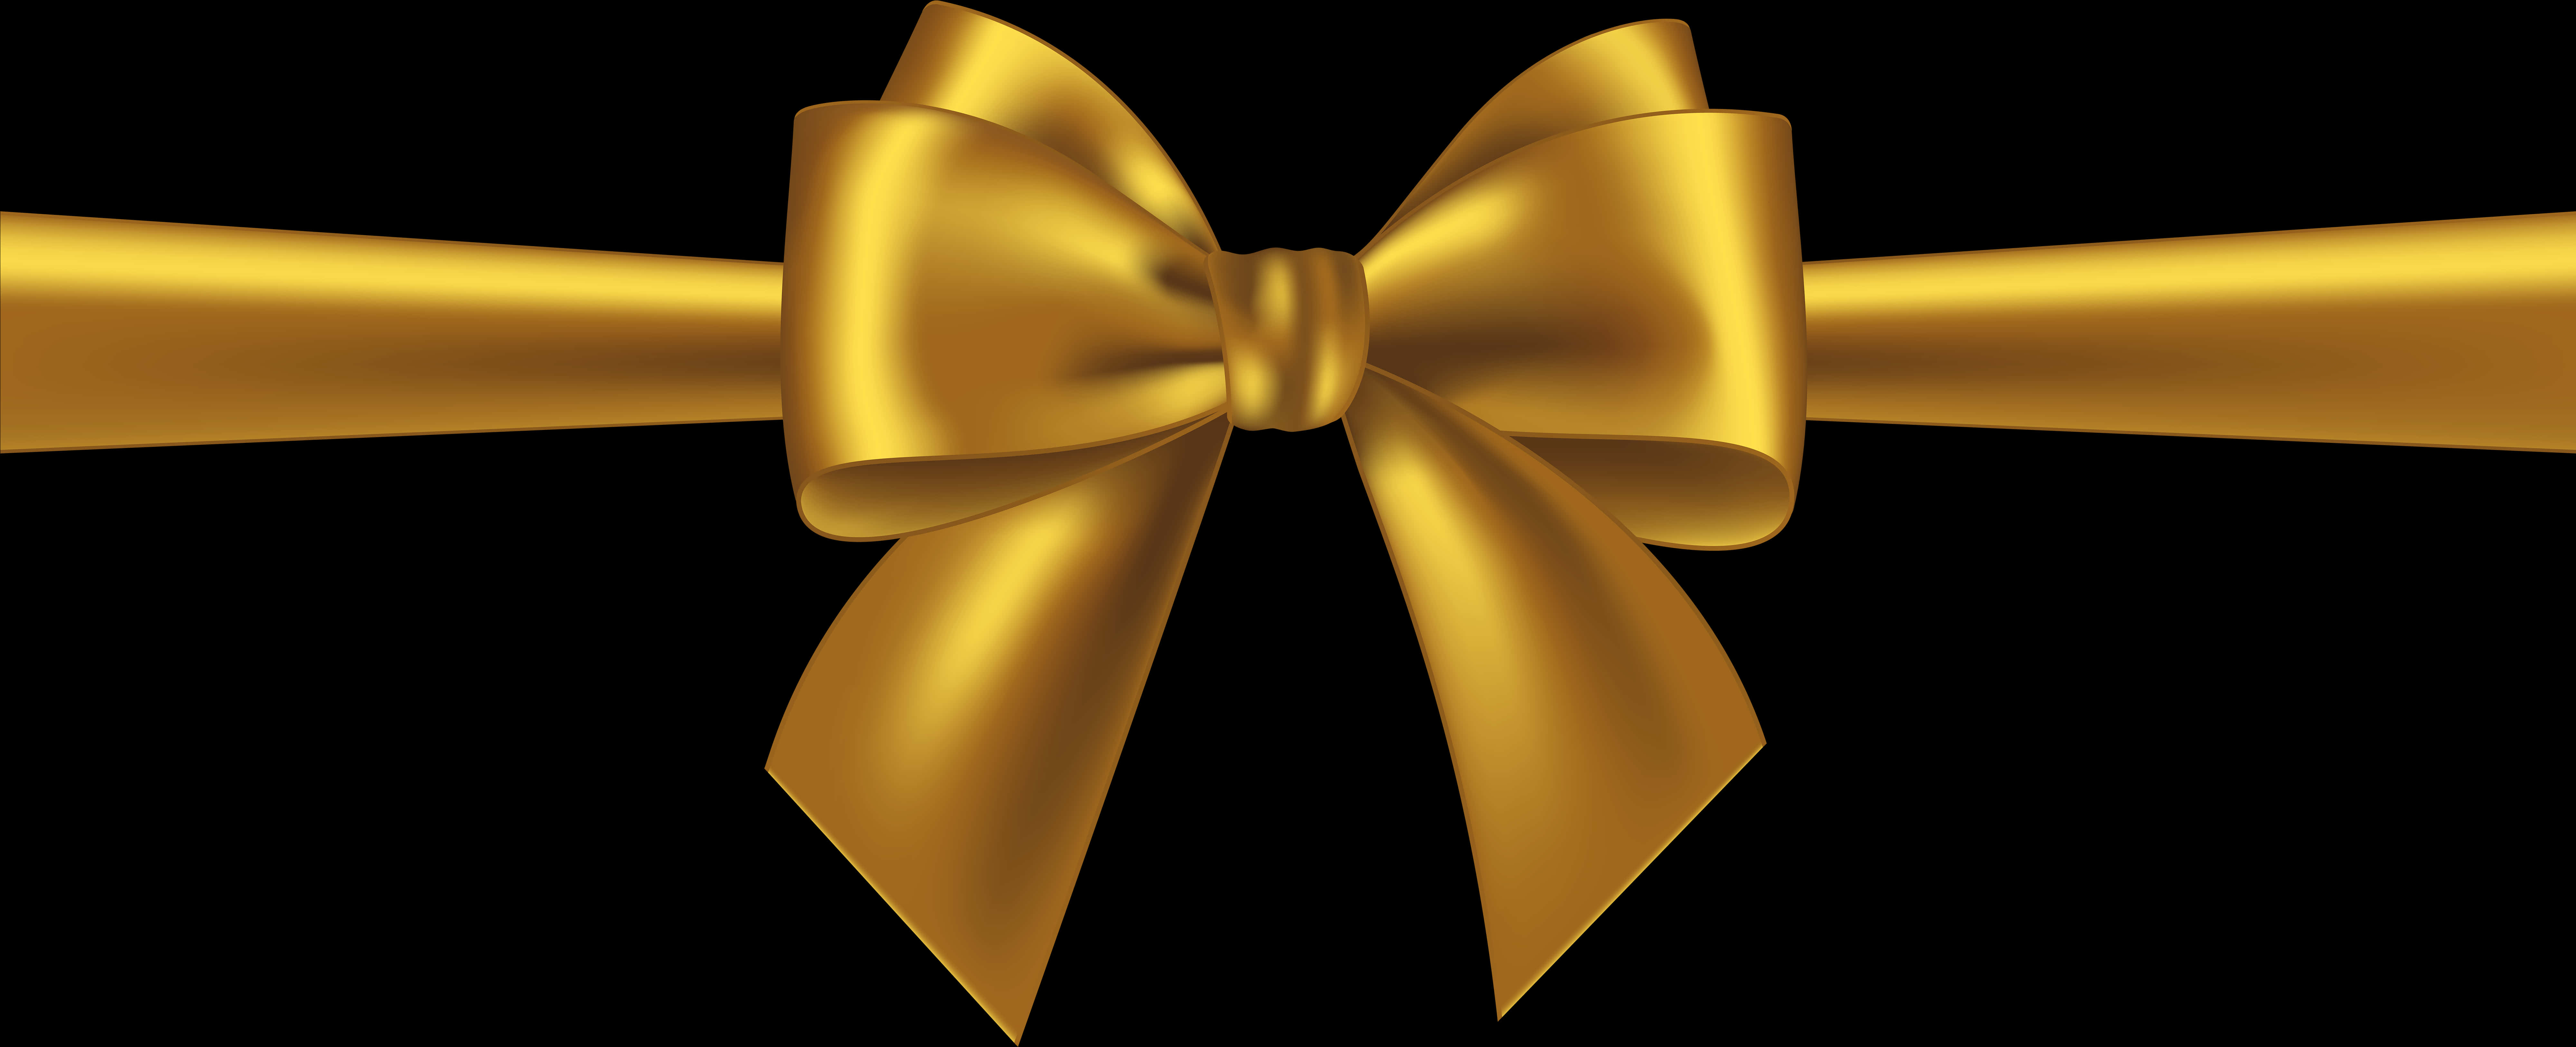 Golden Gift Bow